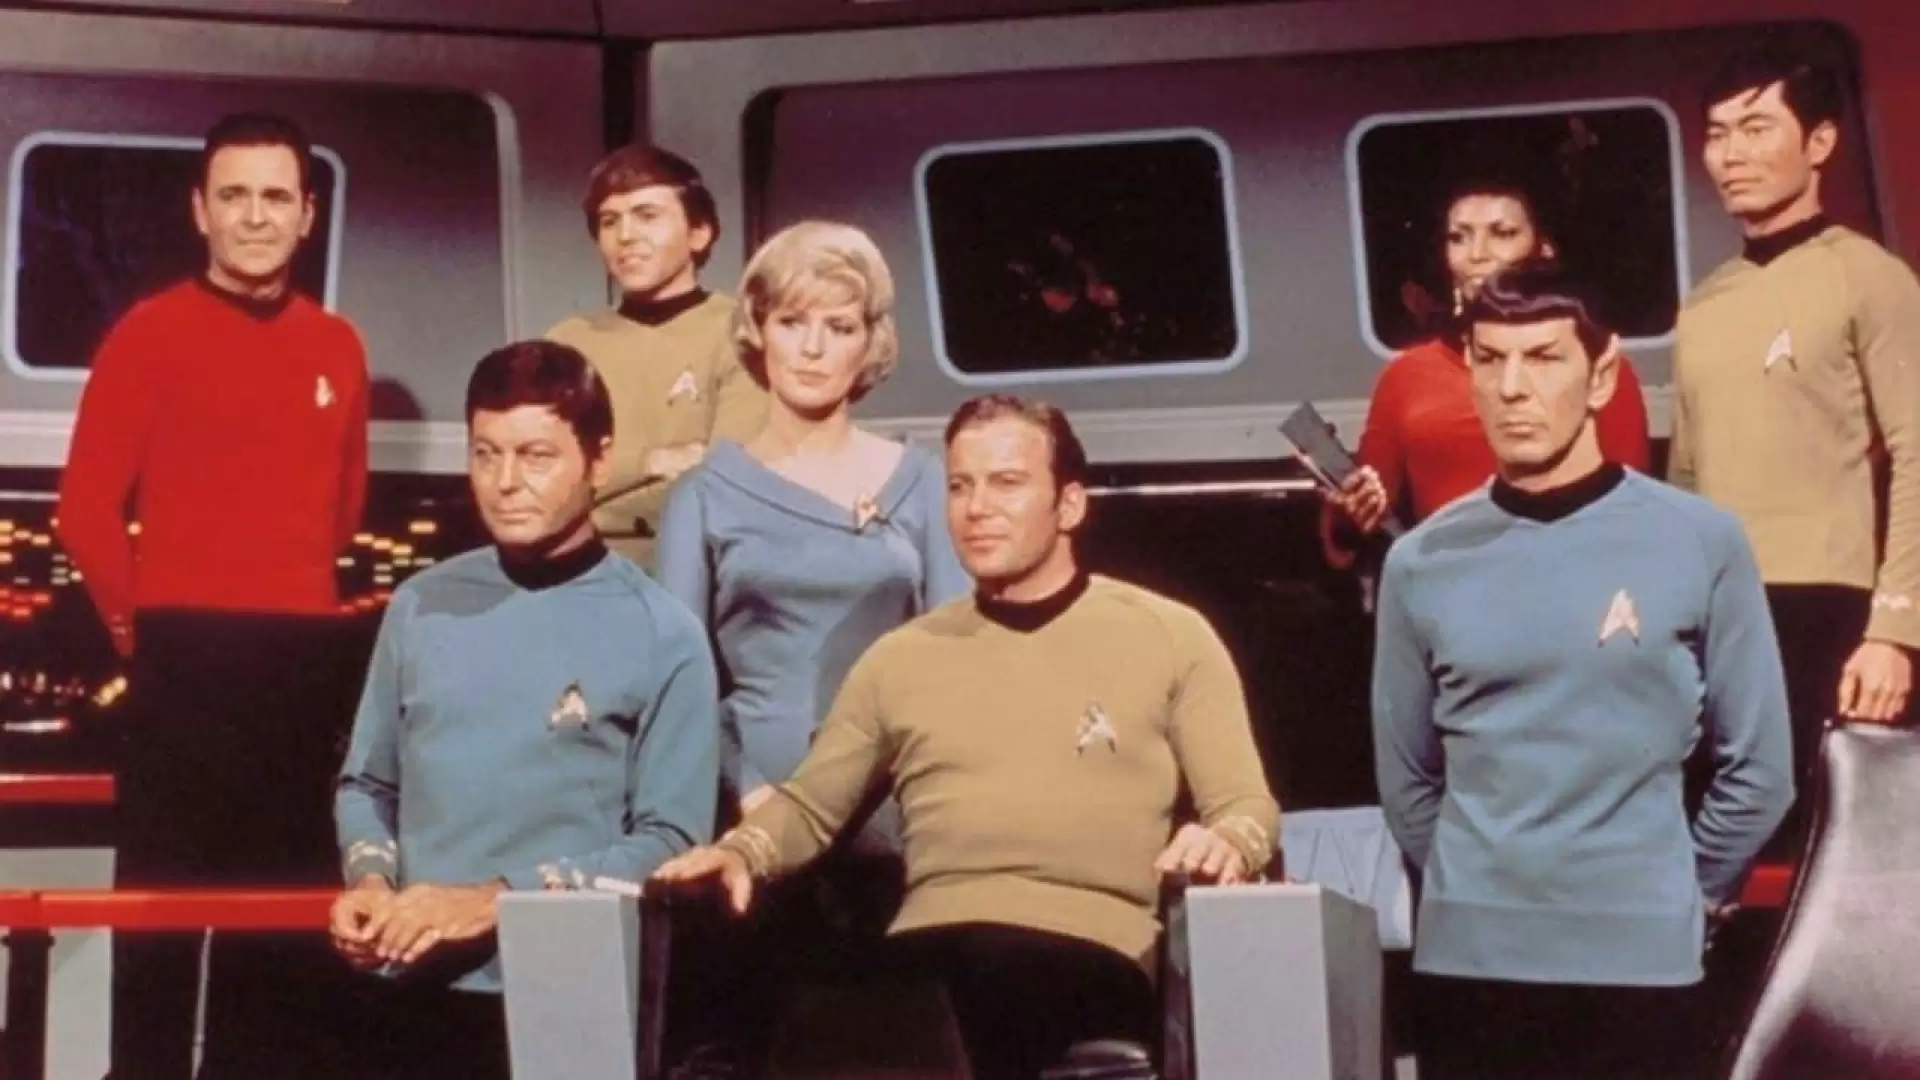 دانلود سریال Star Trek: The Original Series 1966 (پیشتازان فضا) با زیرنویس فارسی